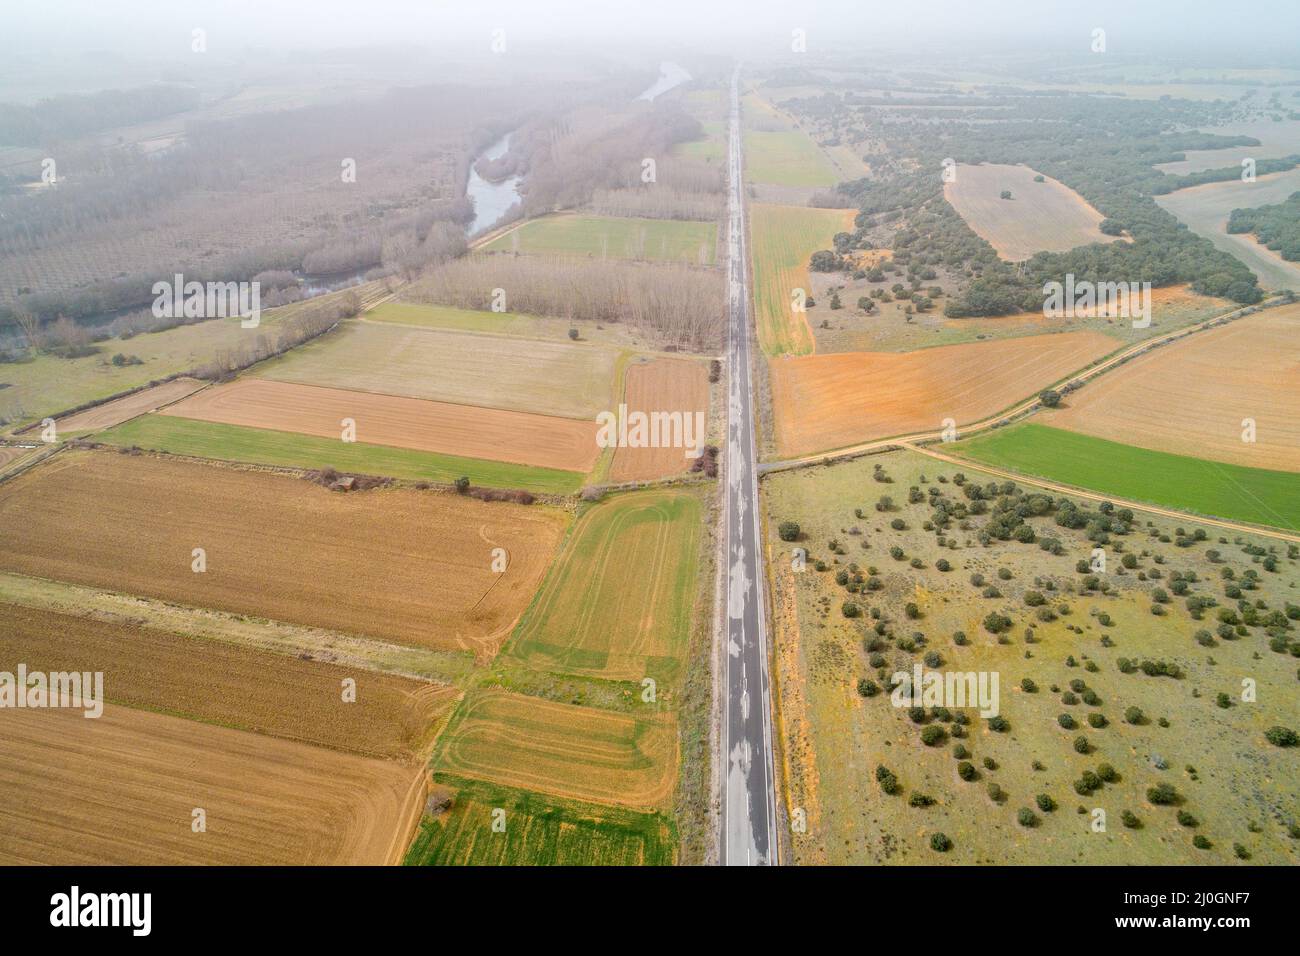 Vue aérienne des terres agricoles et des rangées de cultures. Pris des airs, regardant sur un terrain vert en été Banque D'Images